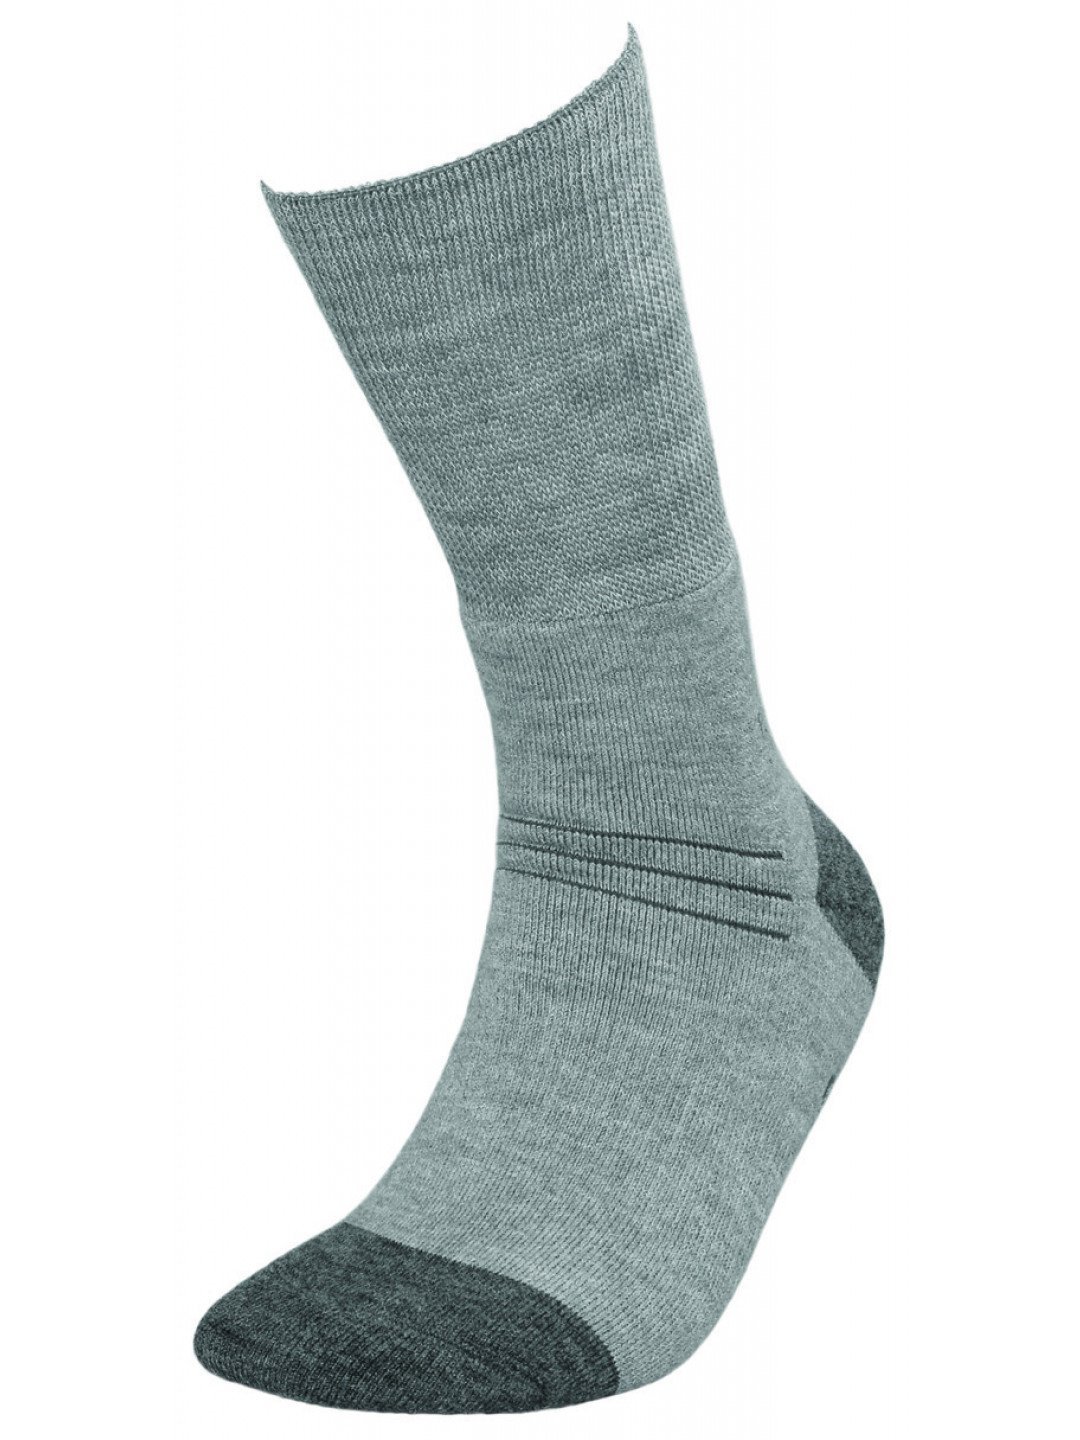 Zdravotní ponožky MEDIC DEO SILVERWOOL – JJW DEOMED šedá 44-46